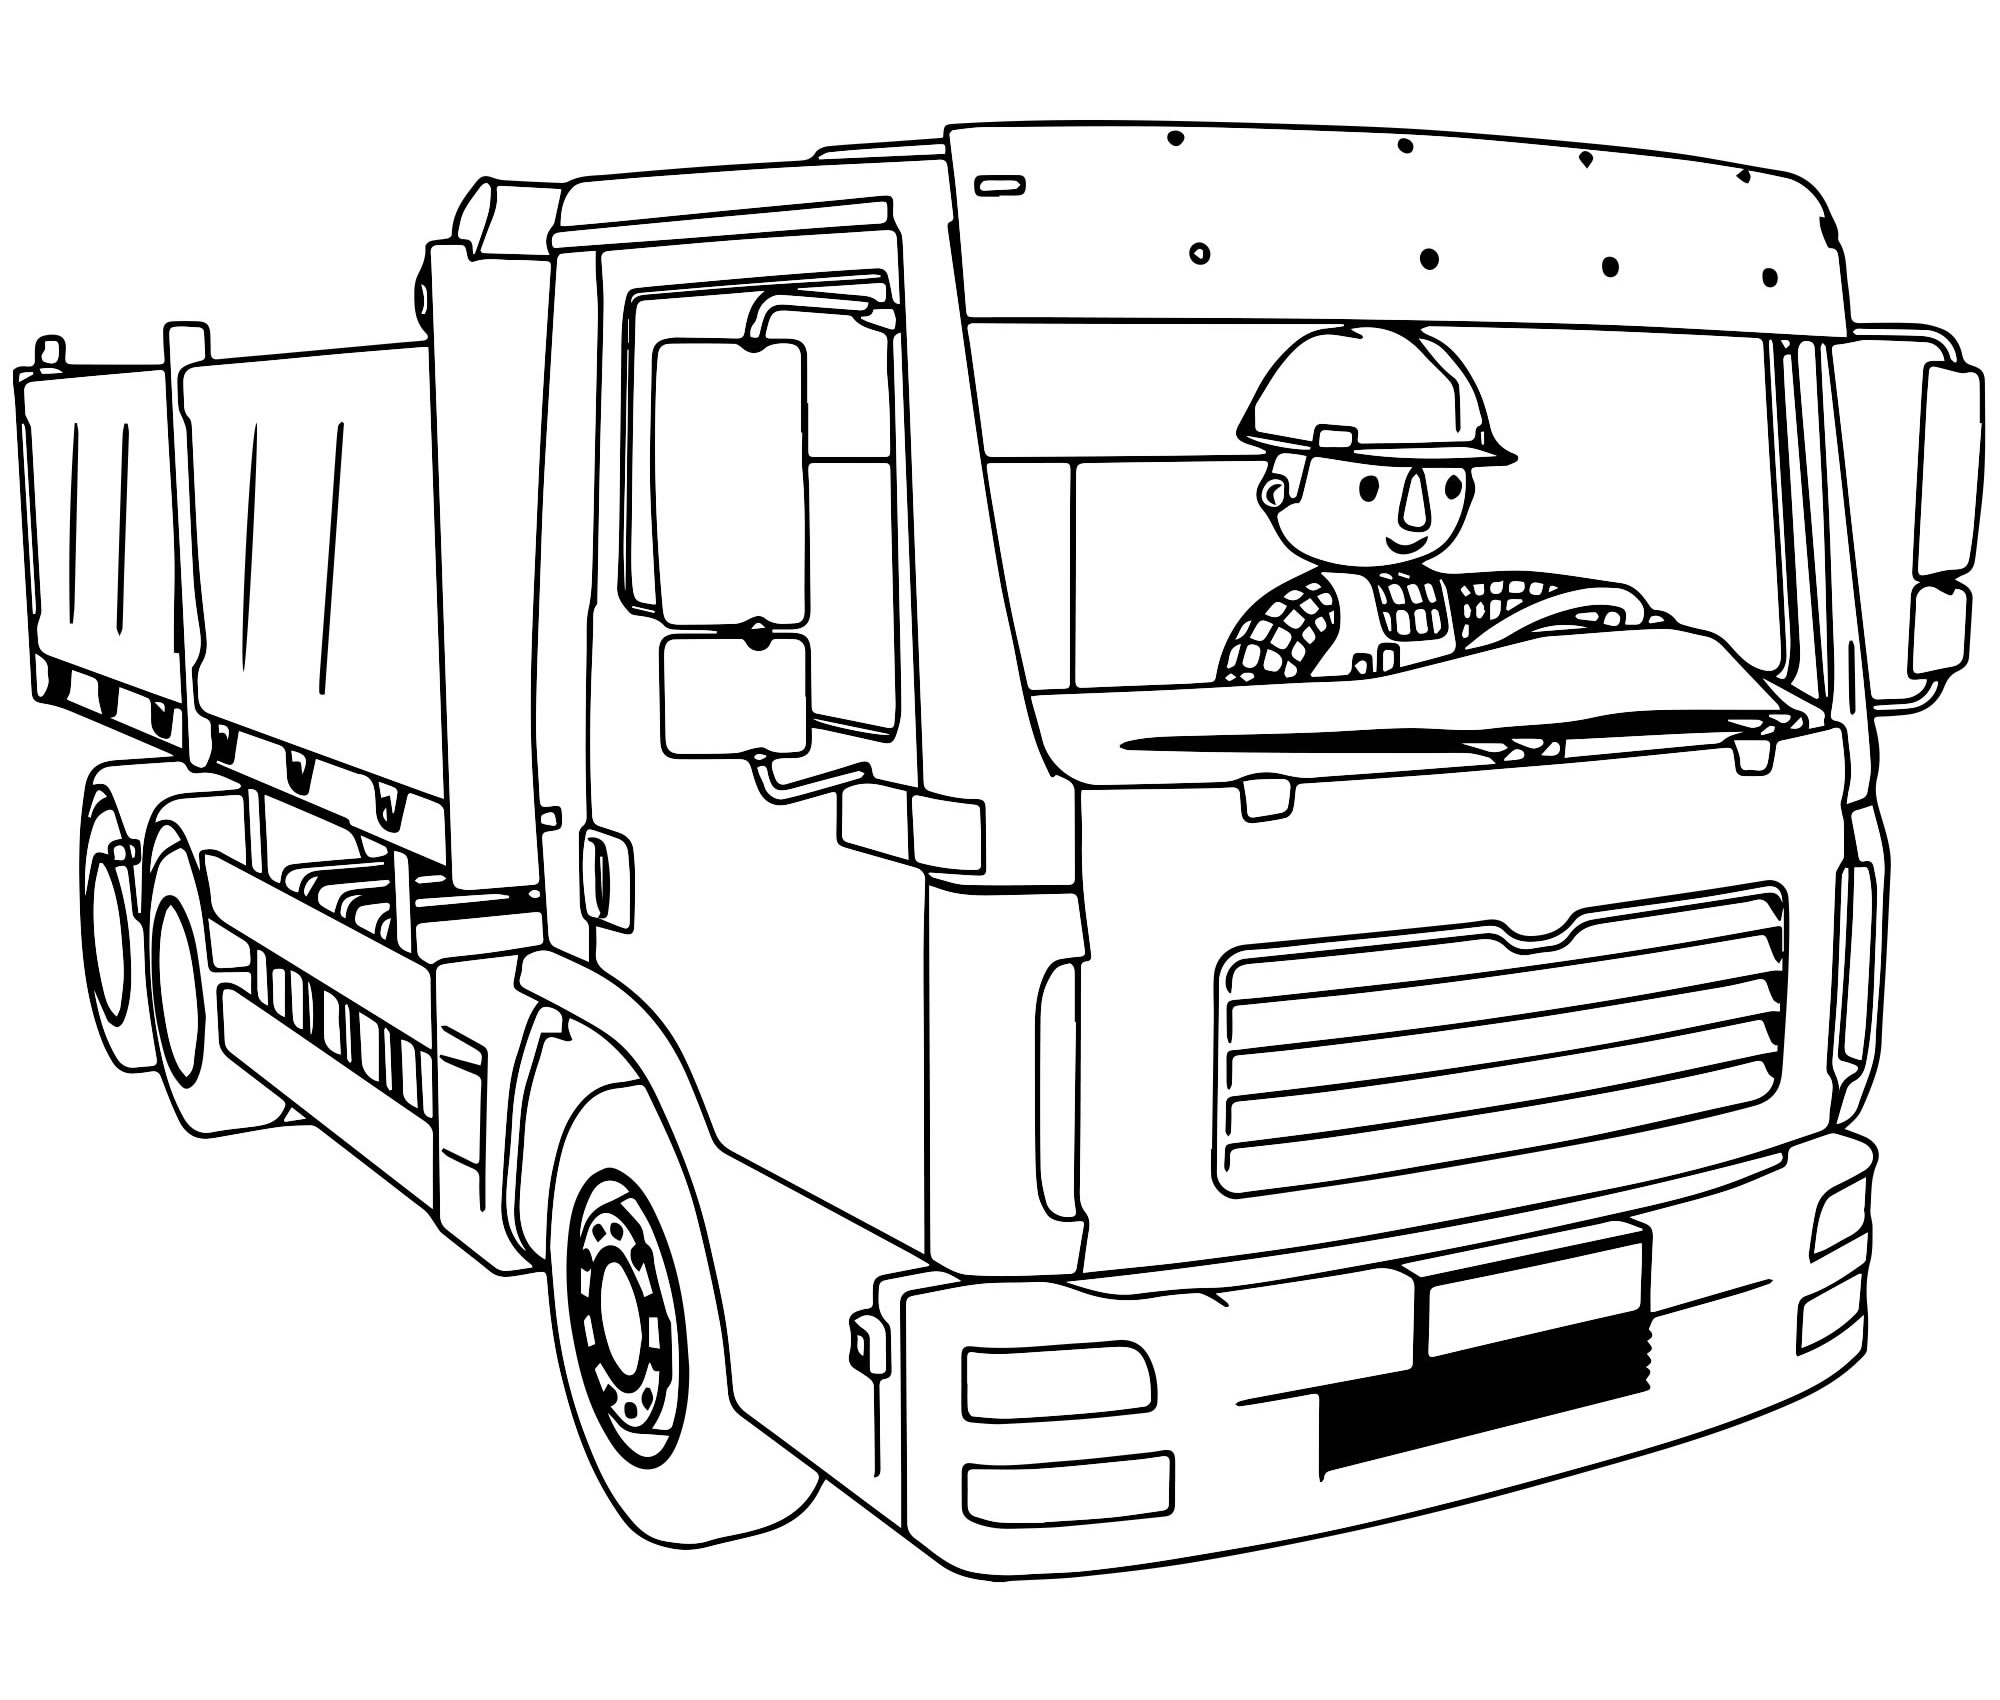 Раскраски грузовые автомобили: самосвалы, тягачи и пр. Раскраска техники для мальчиков скачать